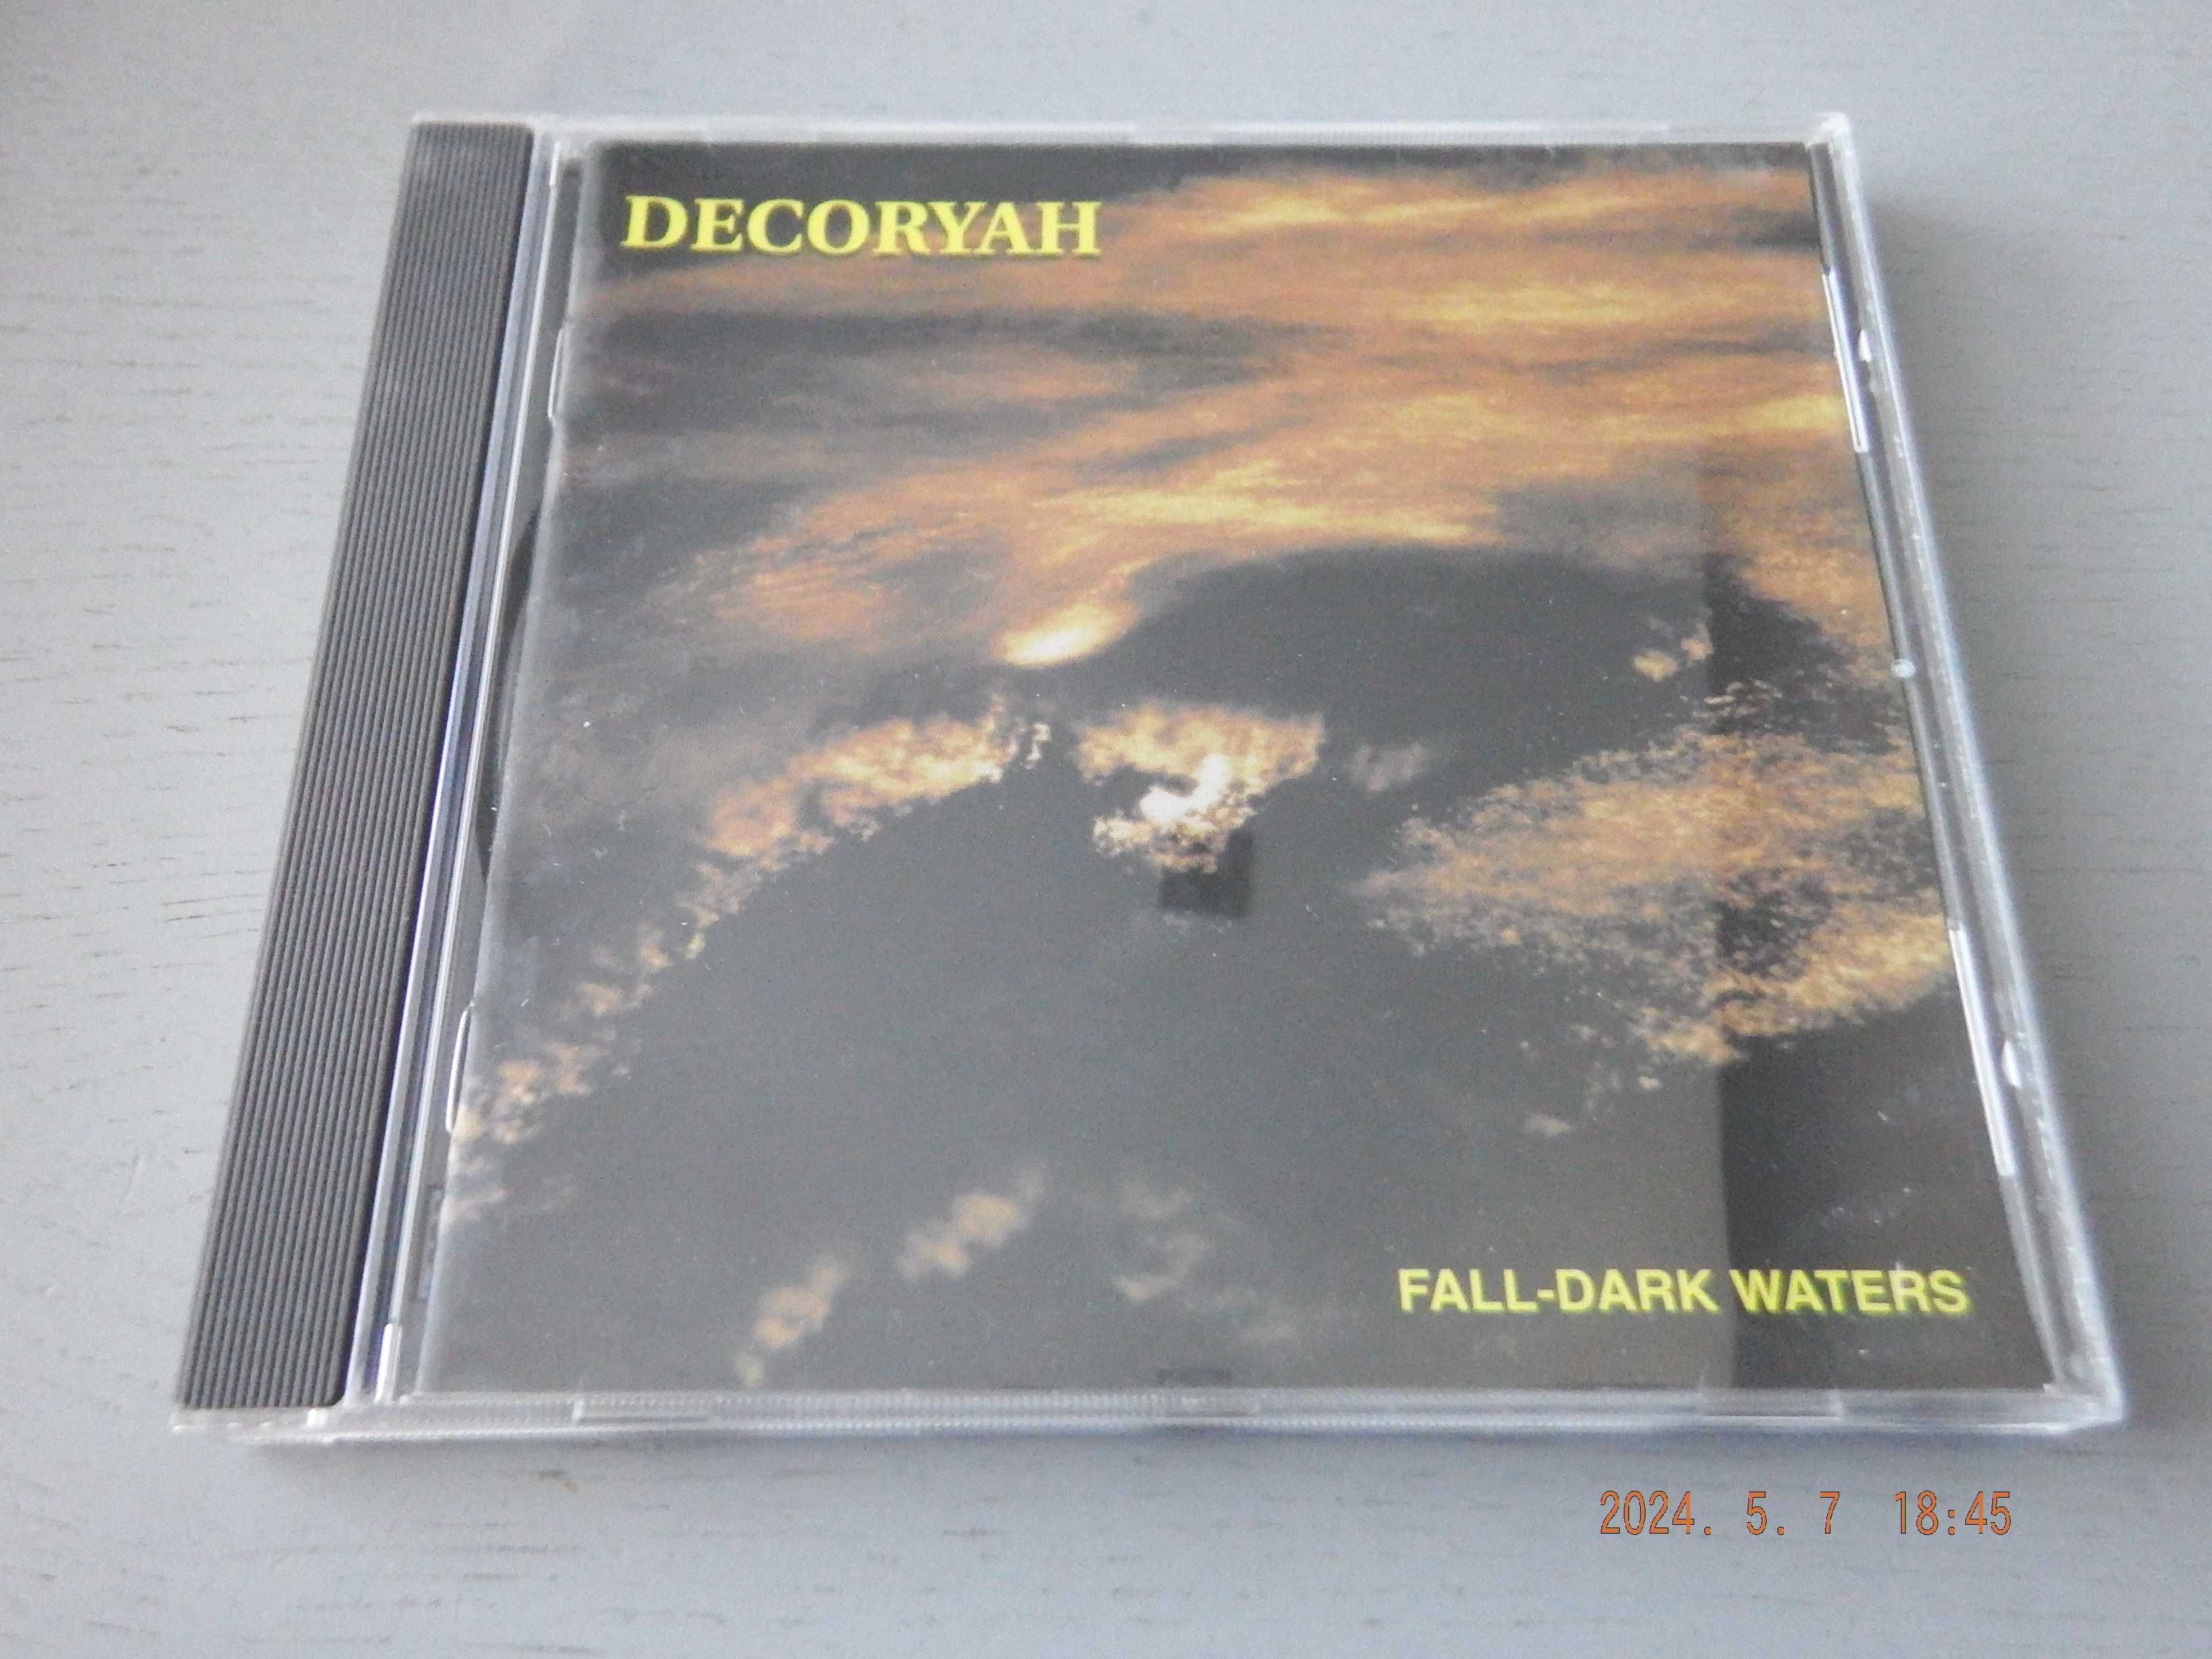 DECORYAH - Fall-dark waters